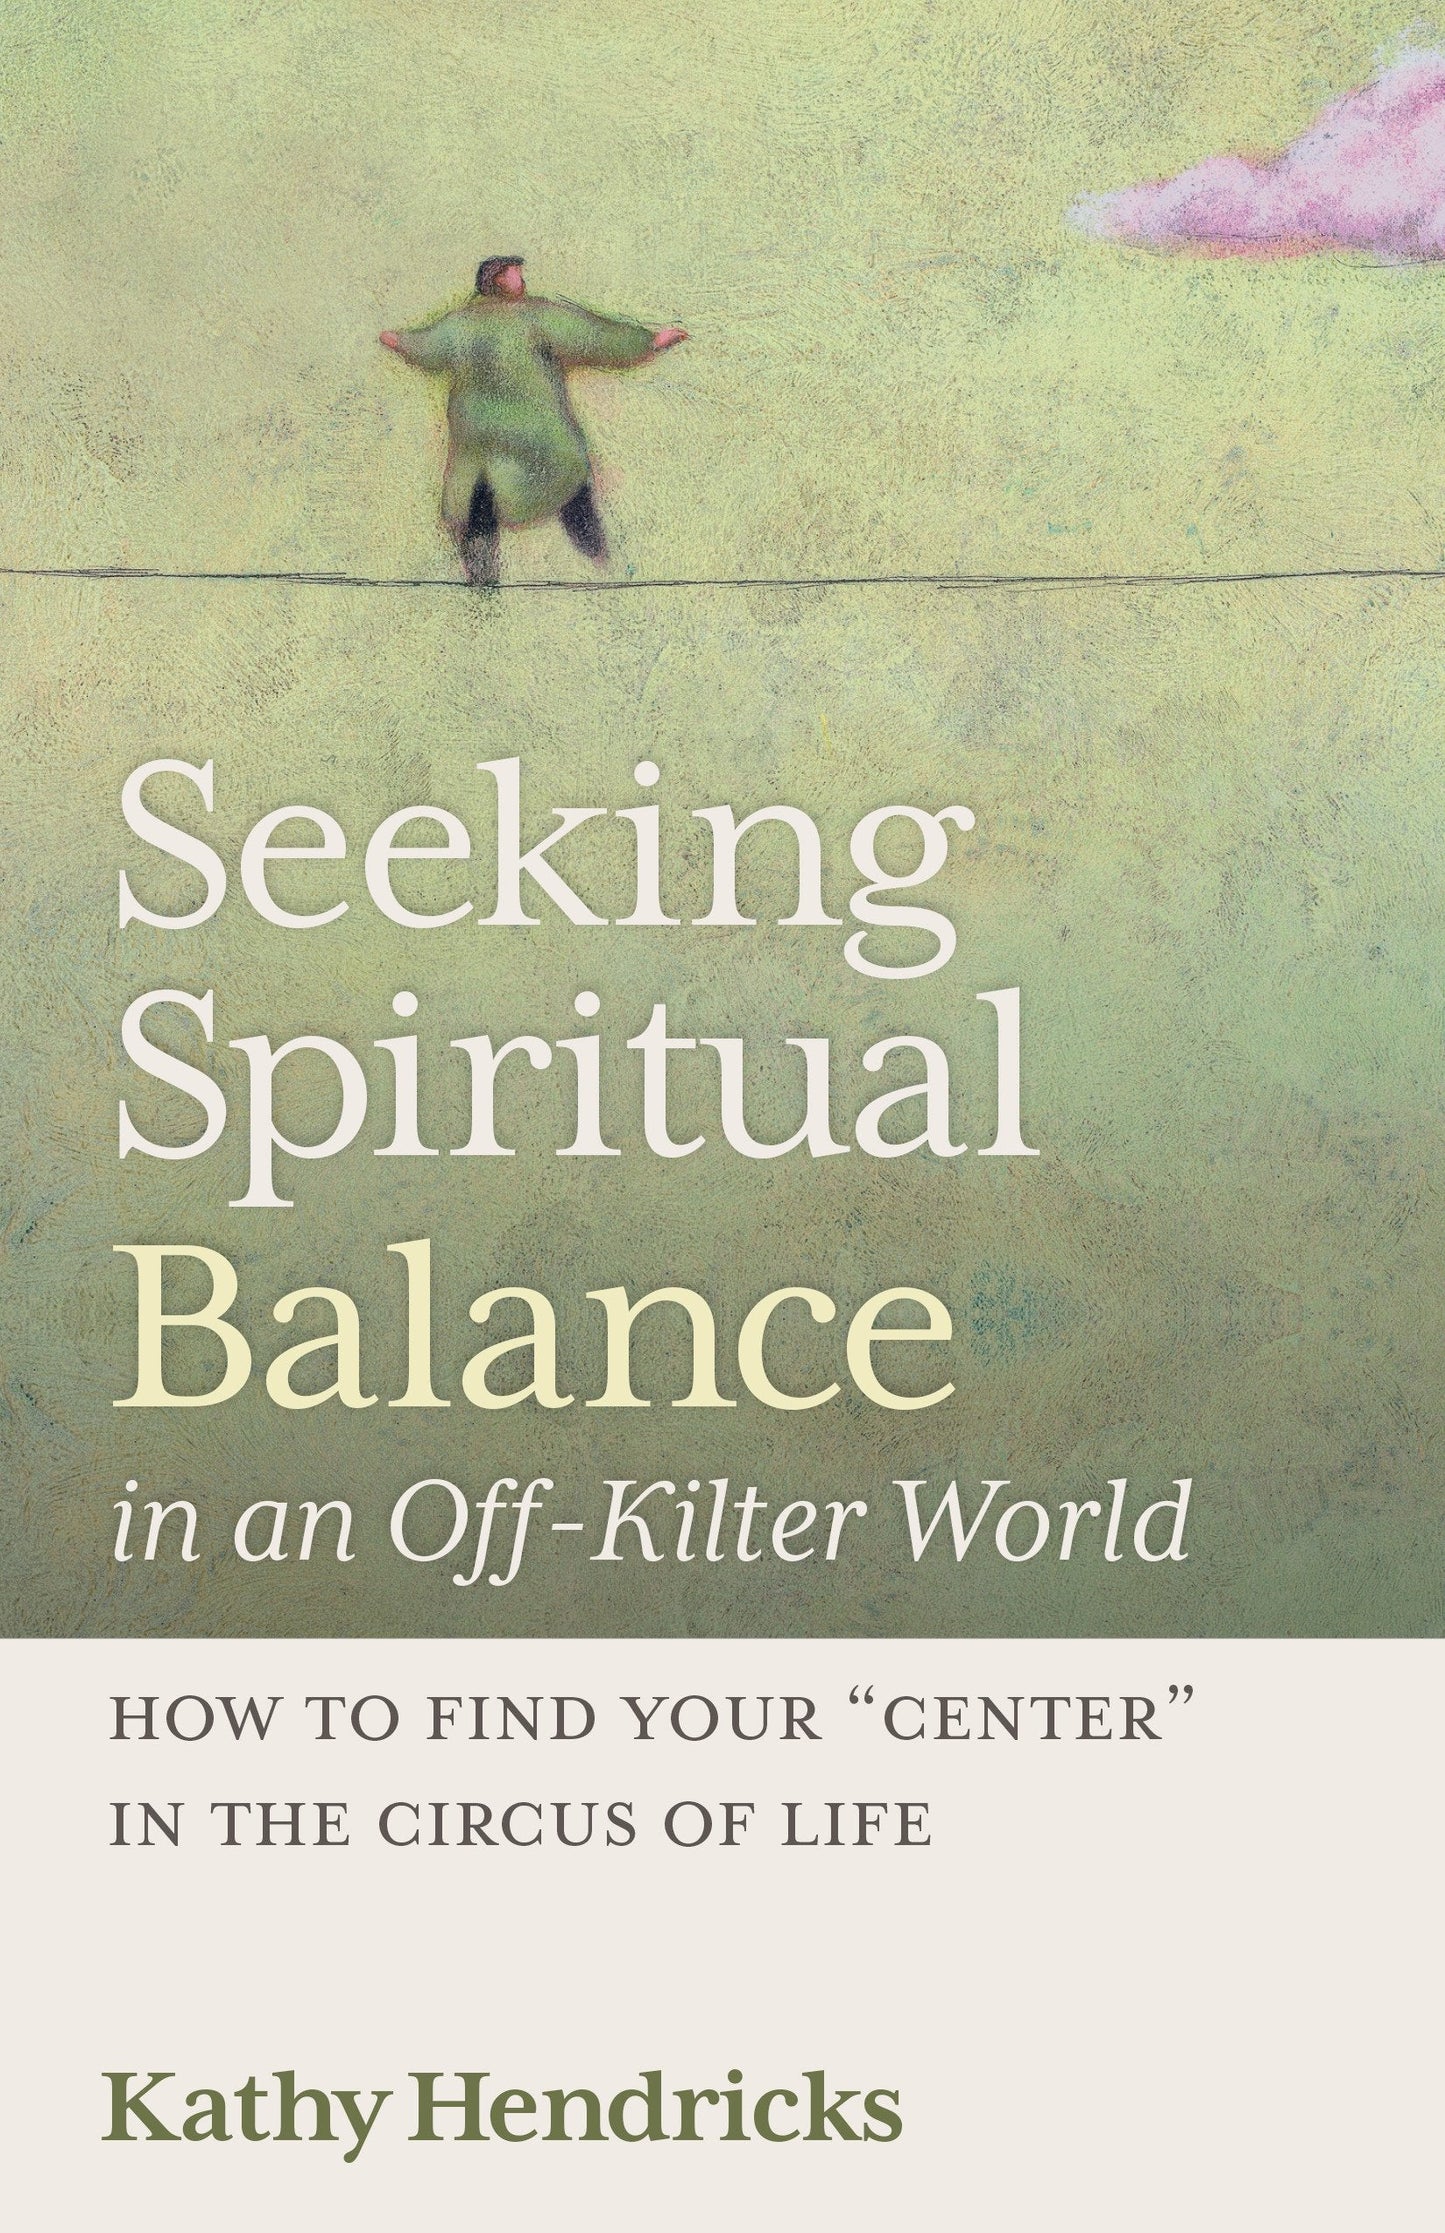 SALE - Seeking Spiritual Balance in an Off-Kilter World